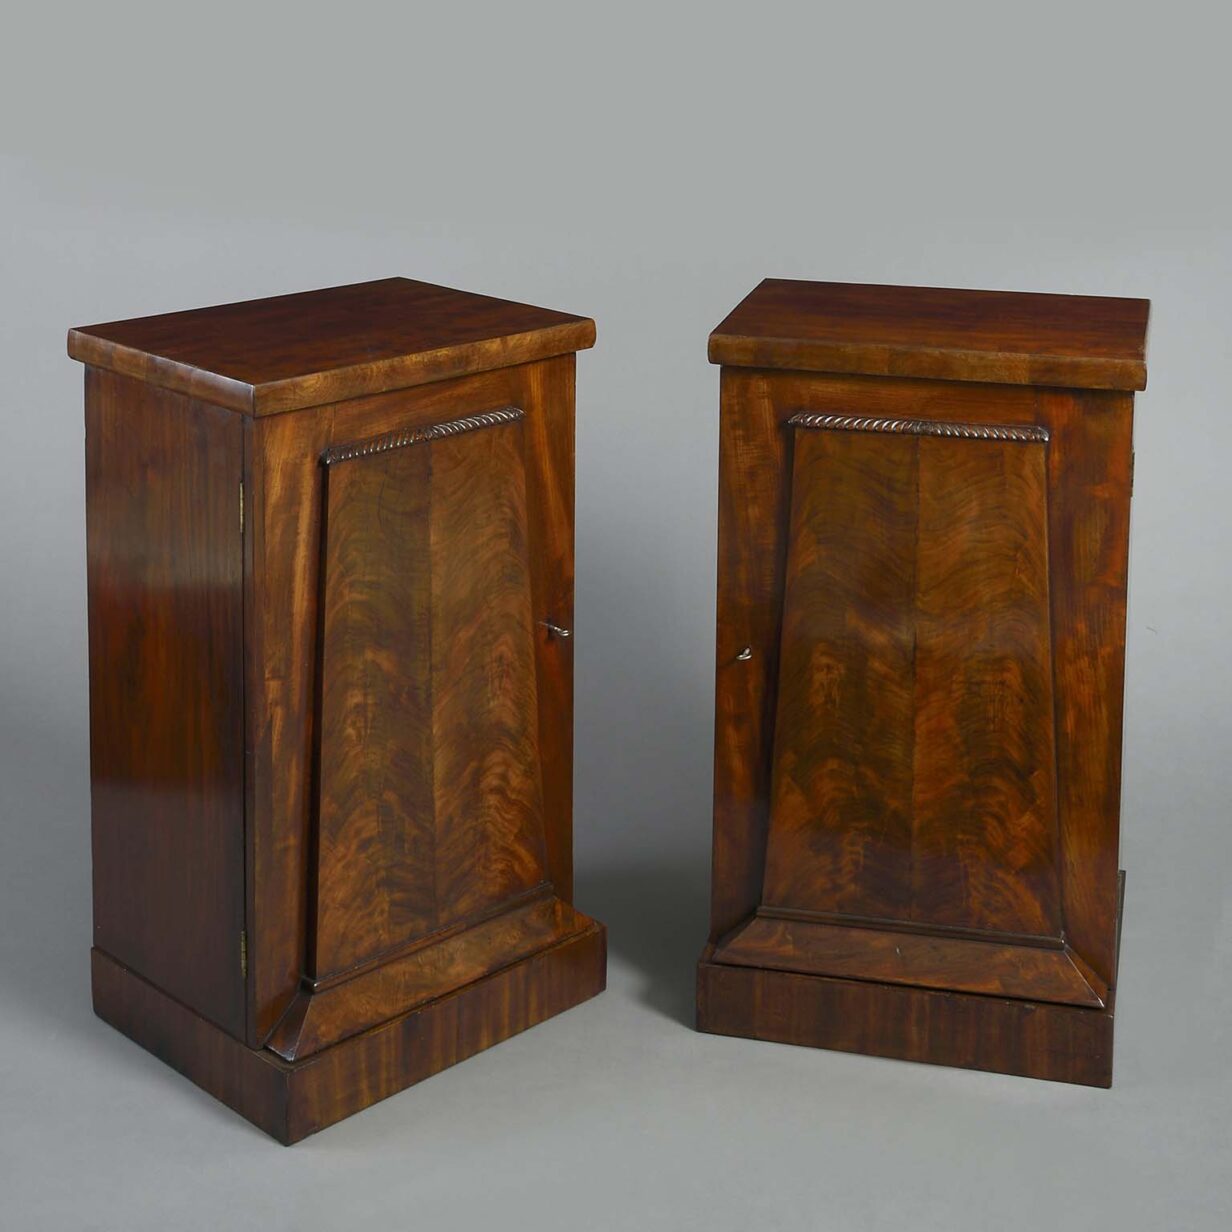 Pair of regency pedestal cabinets